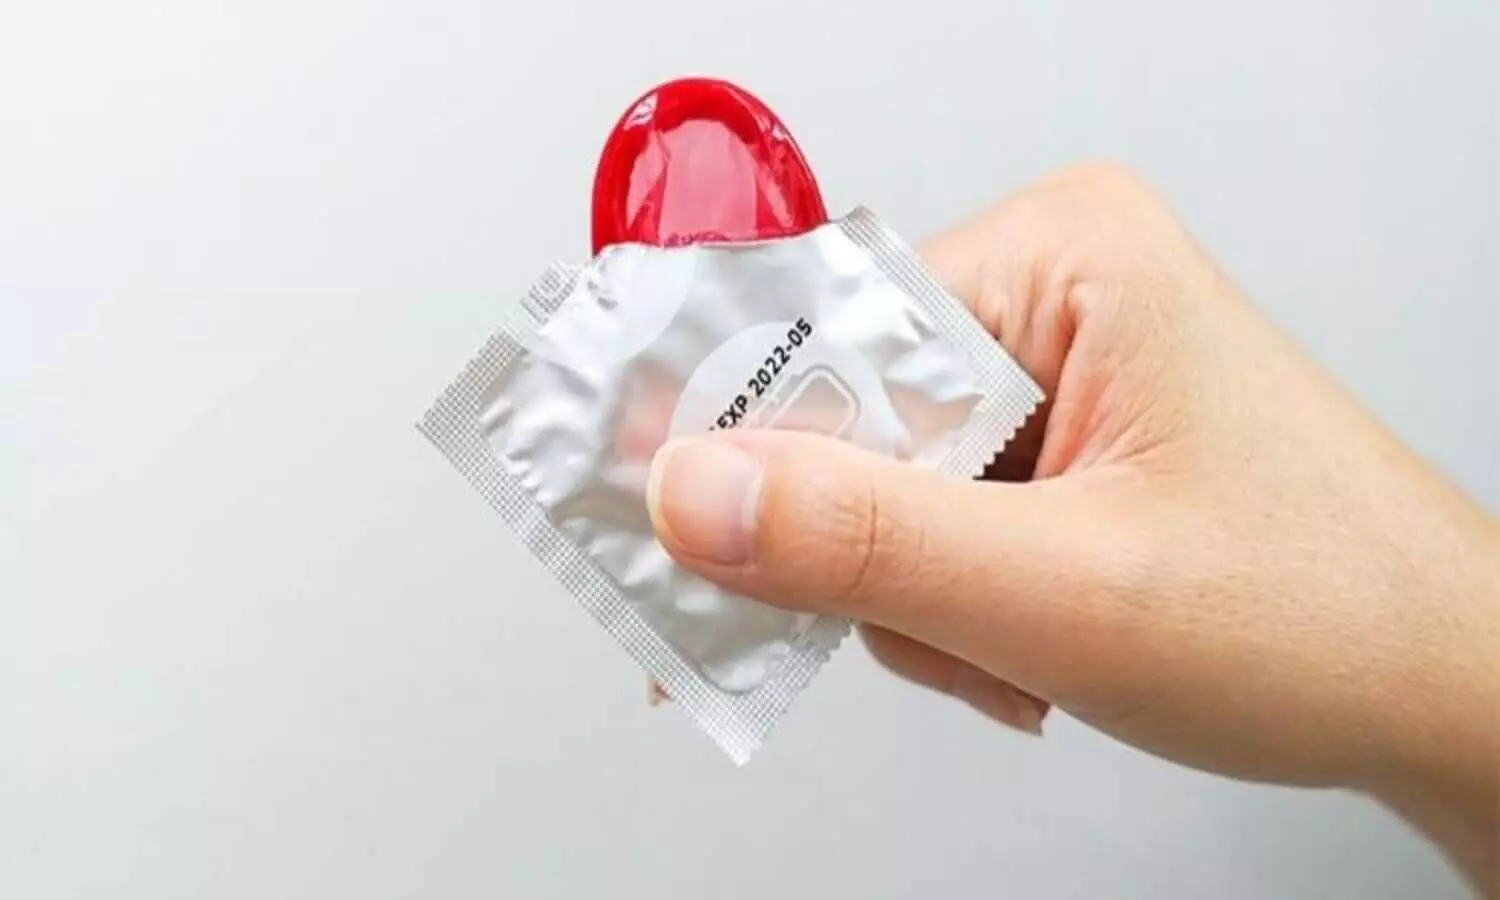 Free condoms